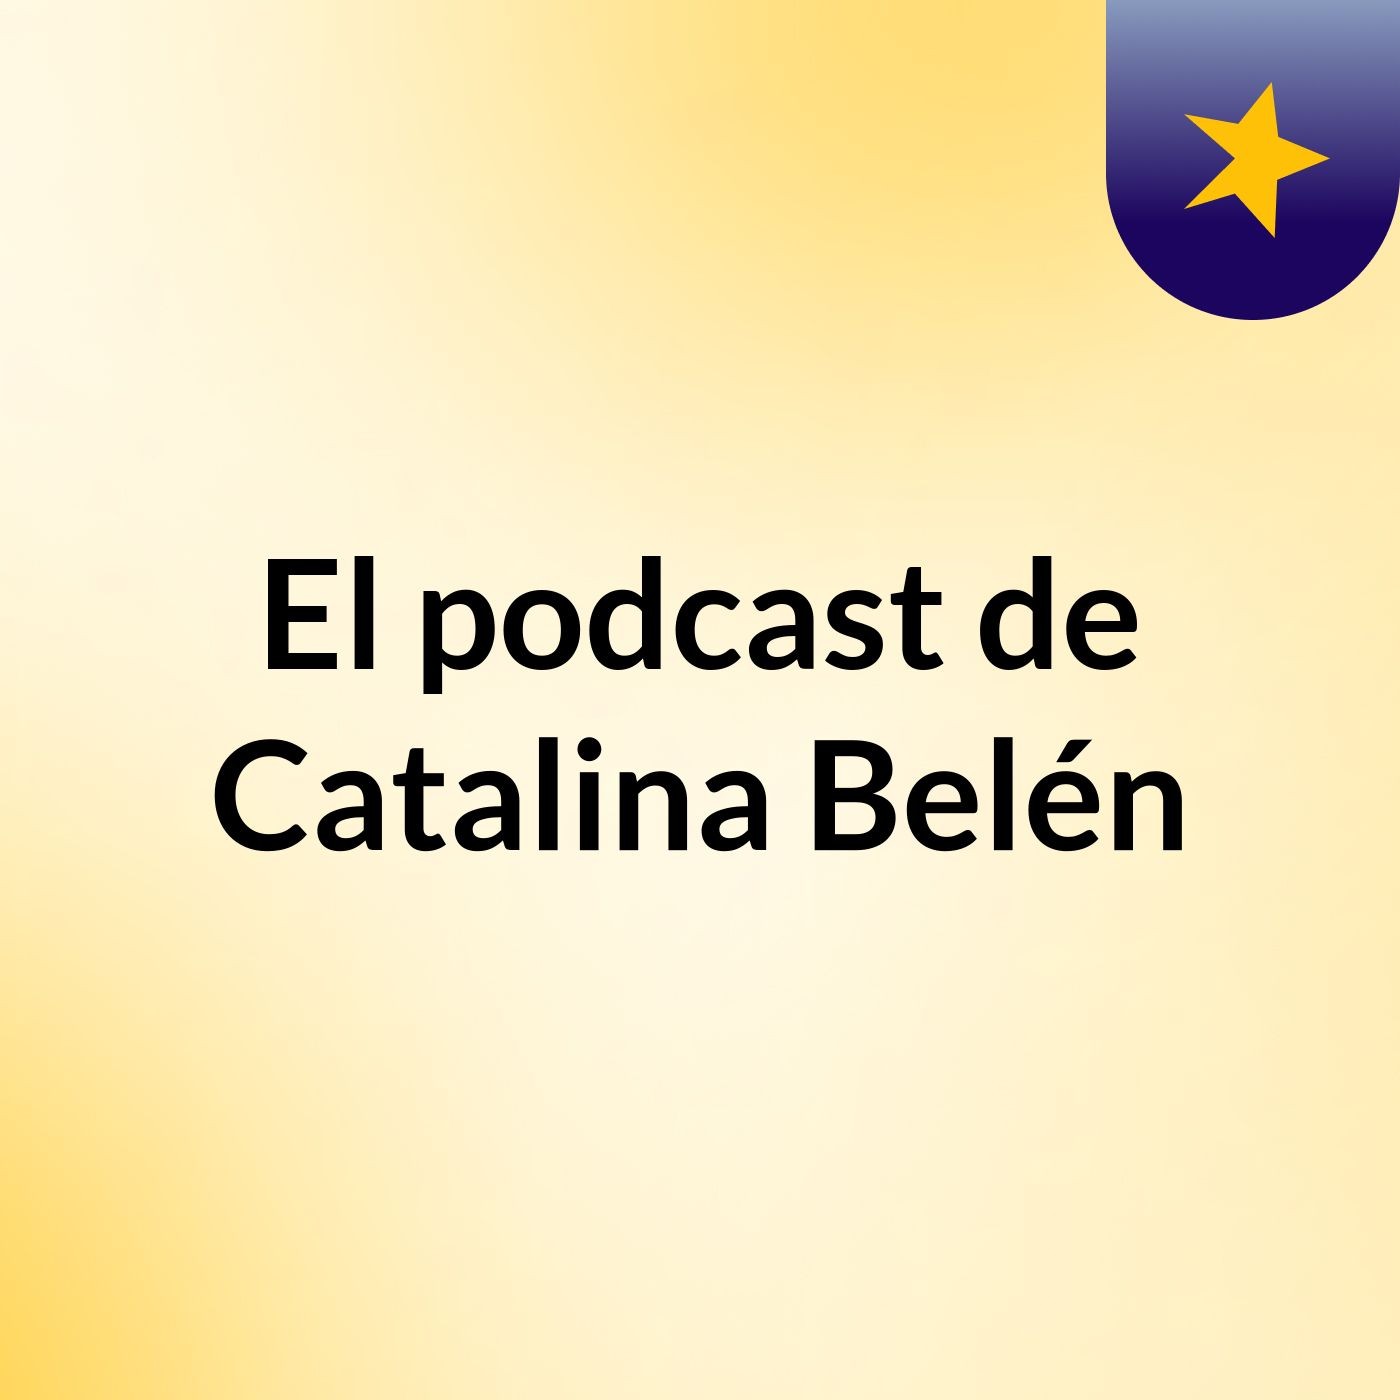 Episodio 21 - El podcast de Catalina Belén